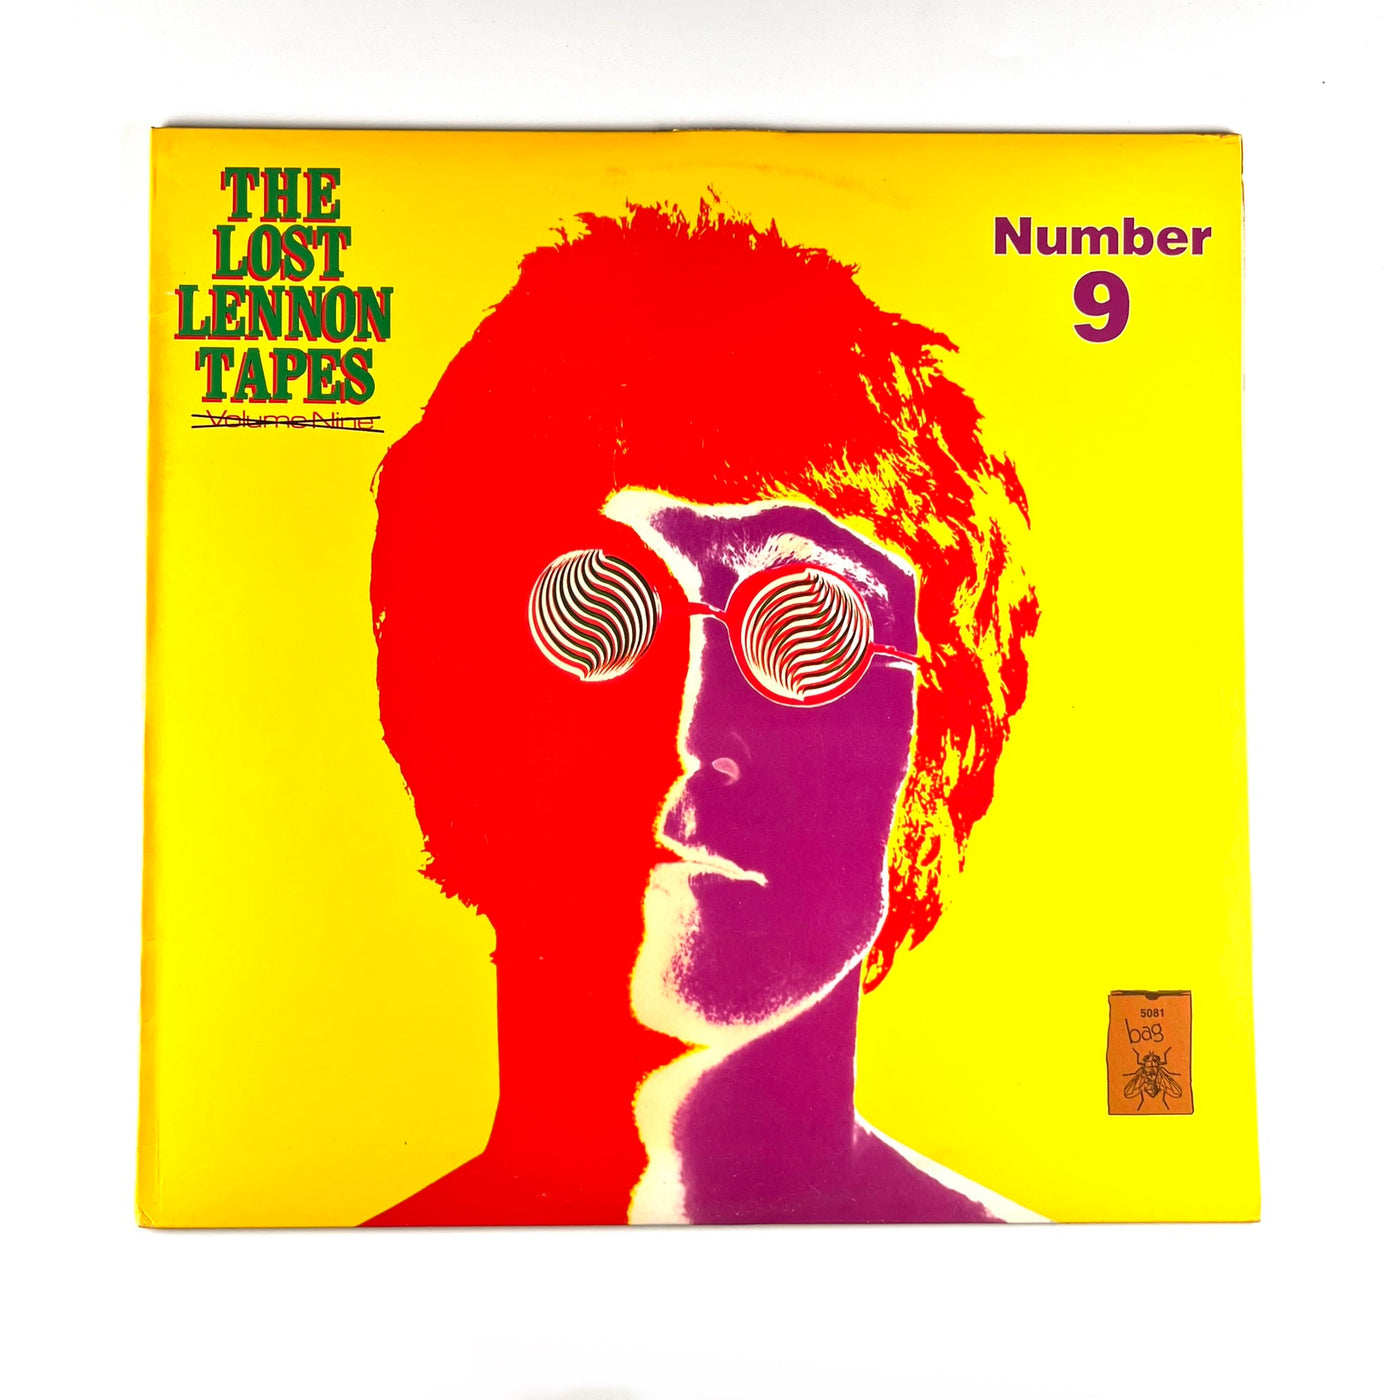 John Lennon - The Lost Lennon Tapes Number 9